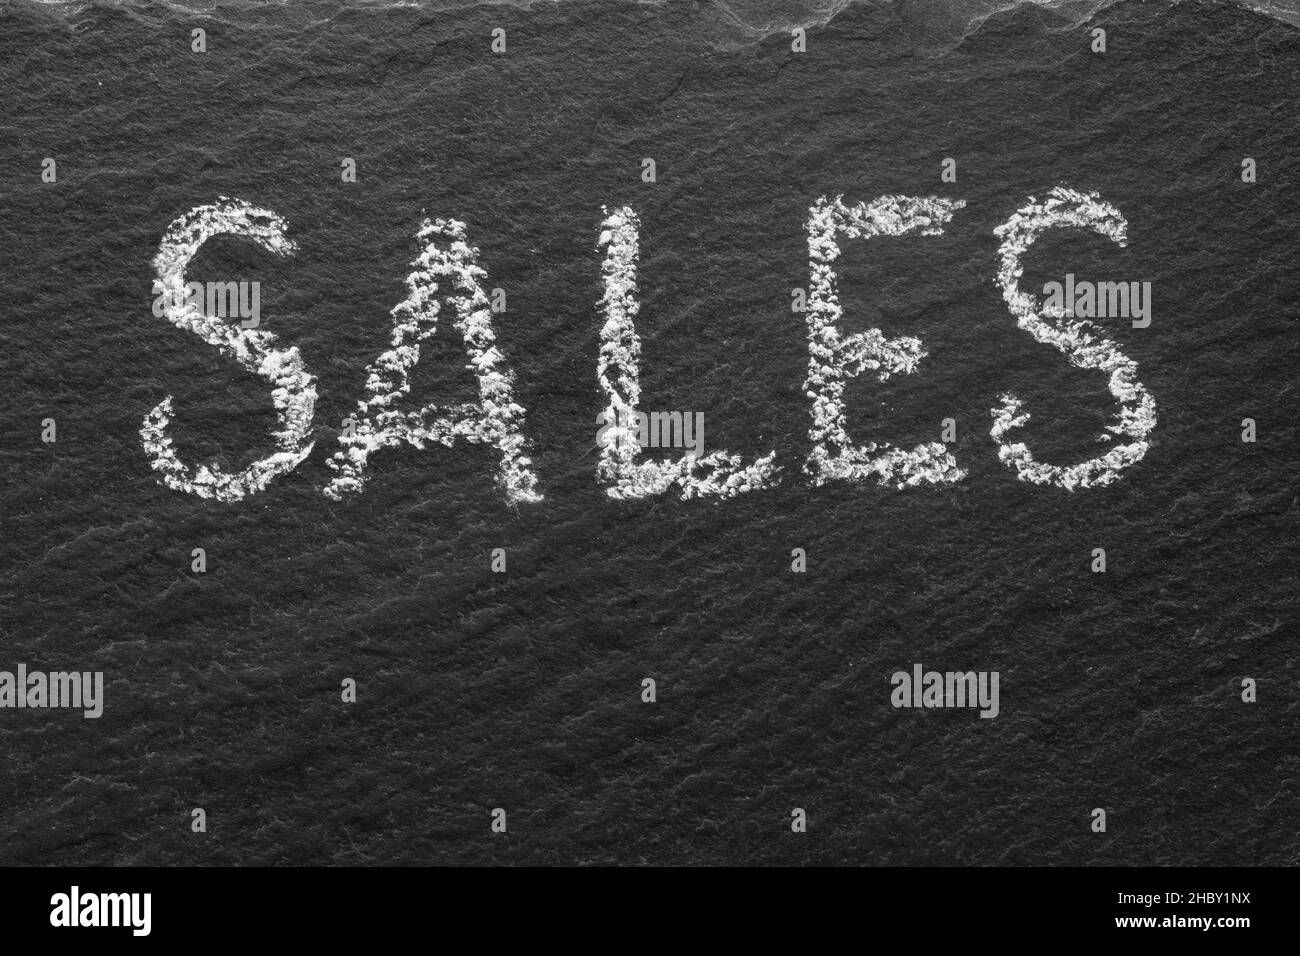 Sales written with white chalk on black stone texture. Macro texture text. Stock Photo